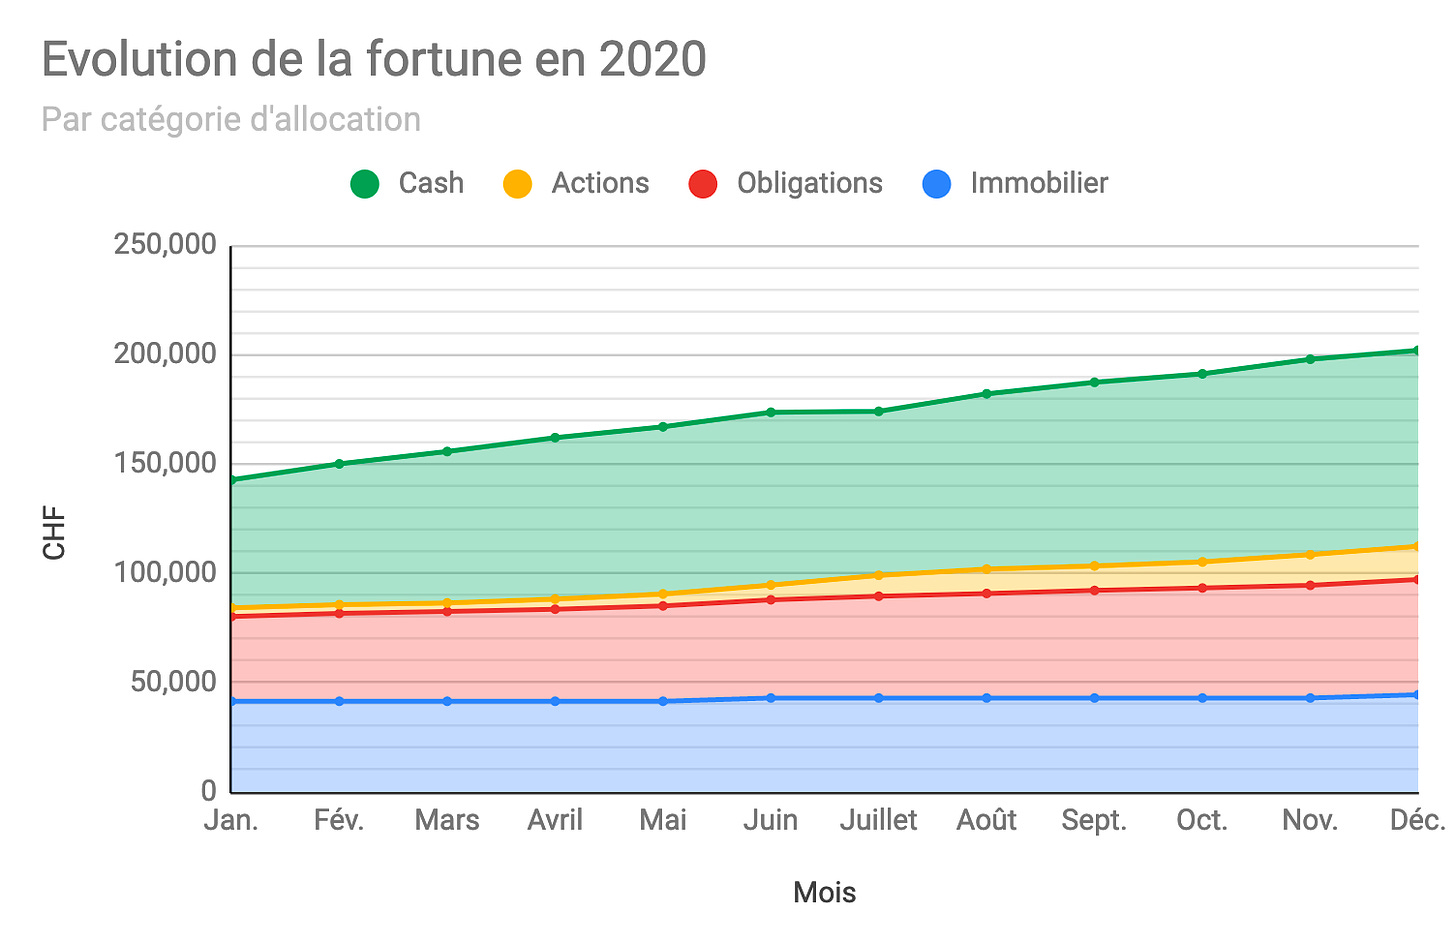 Graphique montrant l'évolution de la fortune au fil des mois de l'année 2020